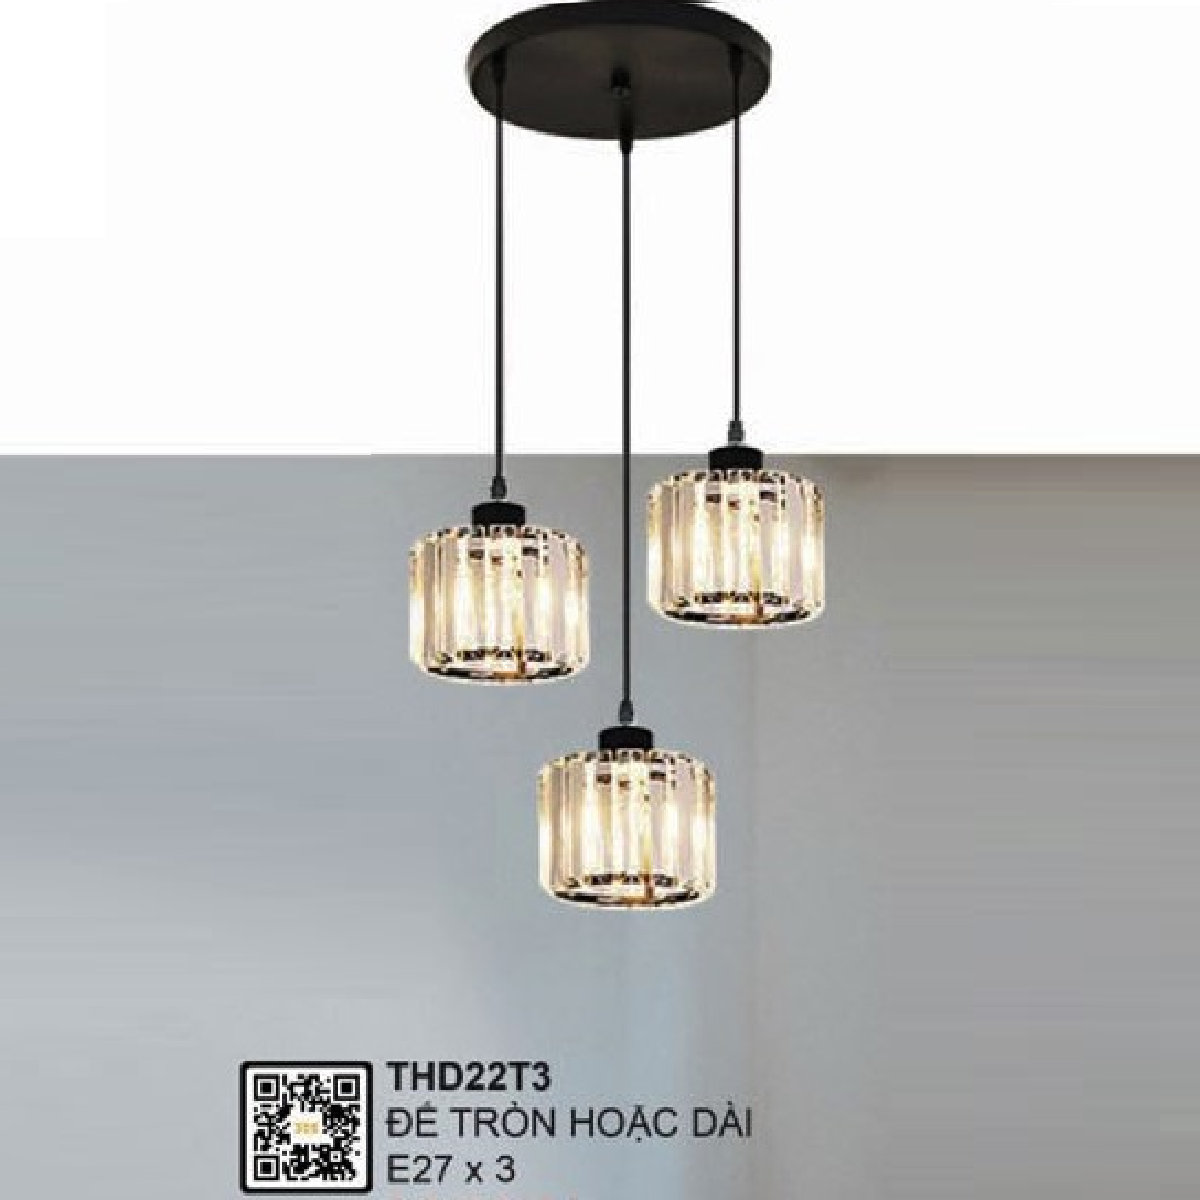 35 - THD22T3: Đèn thả 3 bóng, chao đèn thủy tinh - Gắn đế tròn hoặc dài -  E27 x 3 bóng